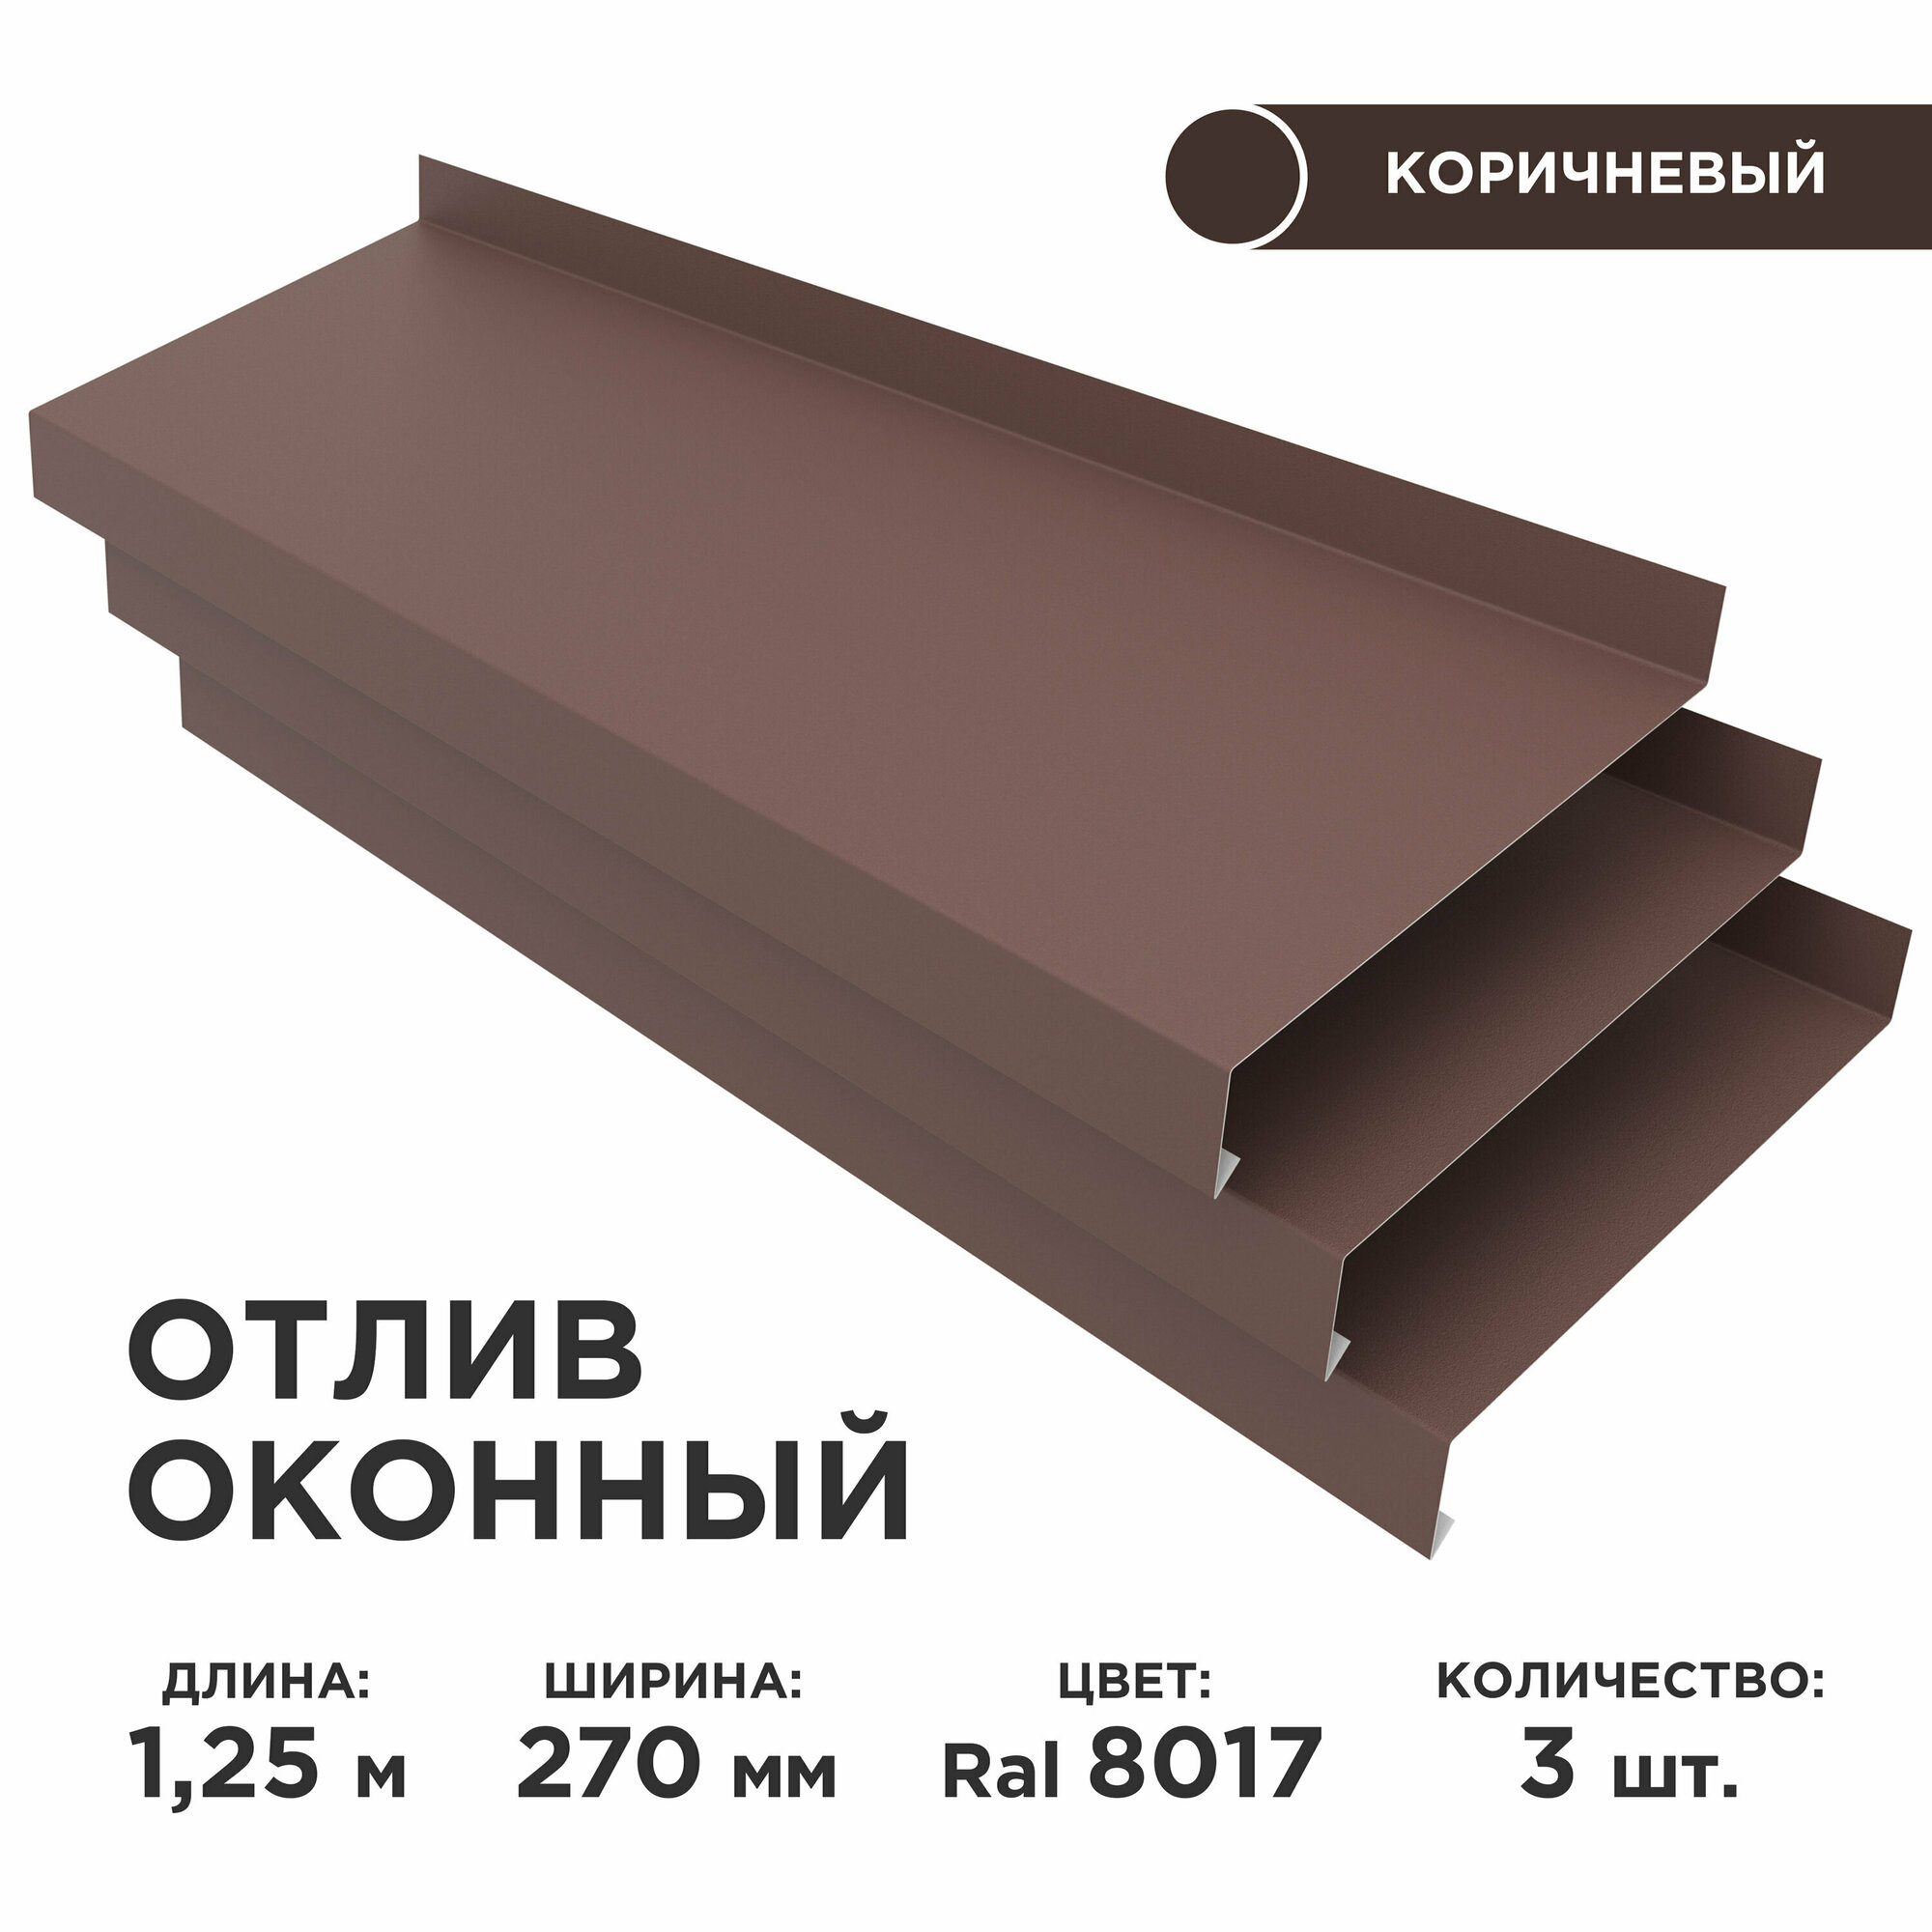 Отлив оконный ширина полки 270мм/ отлив для окна / цвет коричневый(RAL 8017) Длина 1,25м, 3 штуки в комплекте